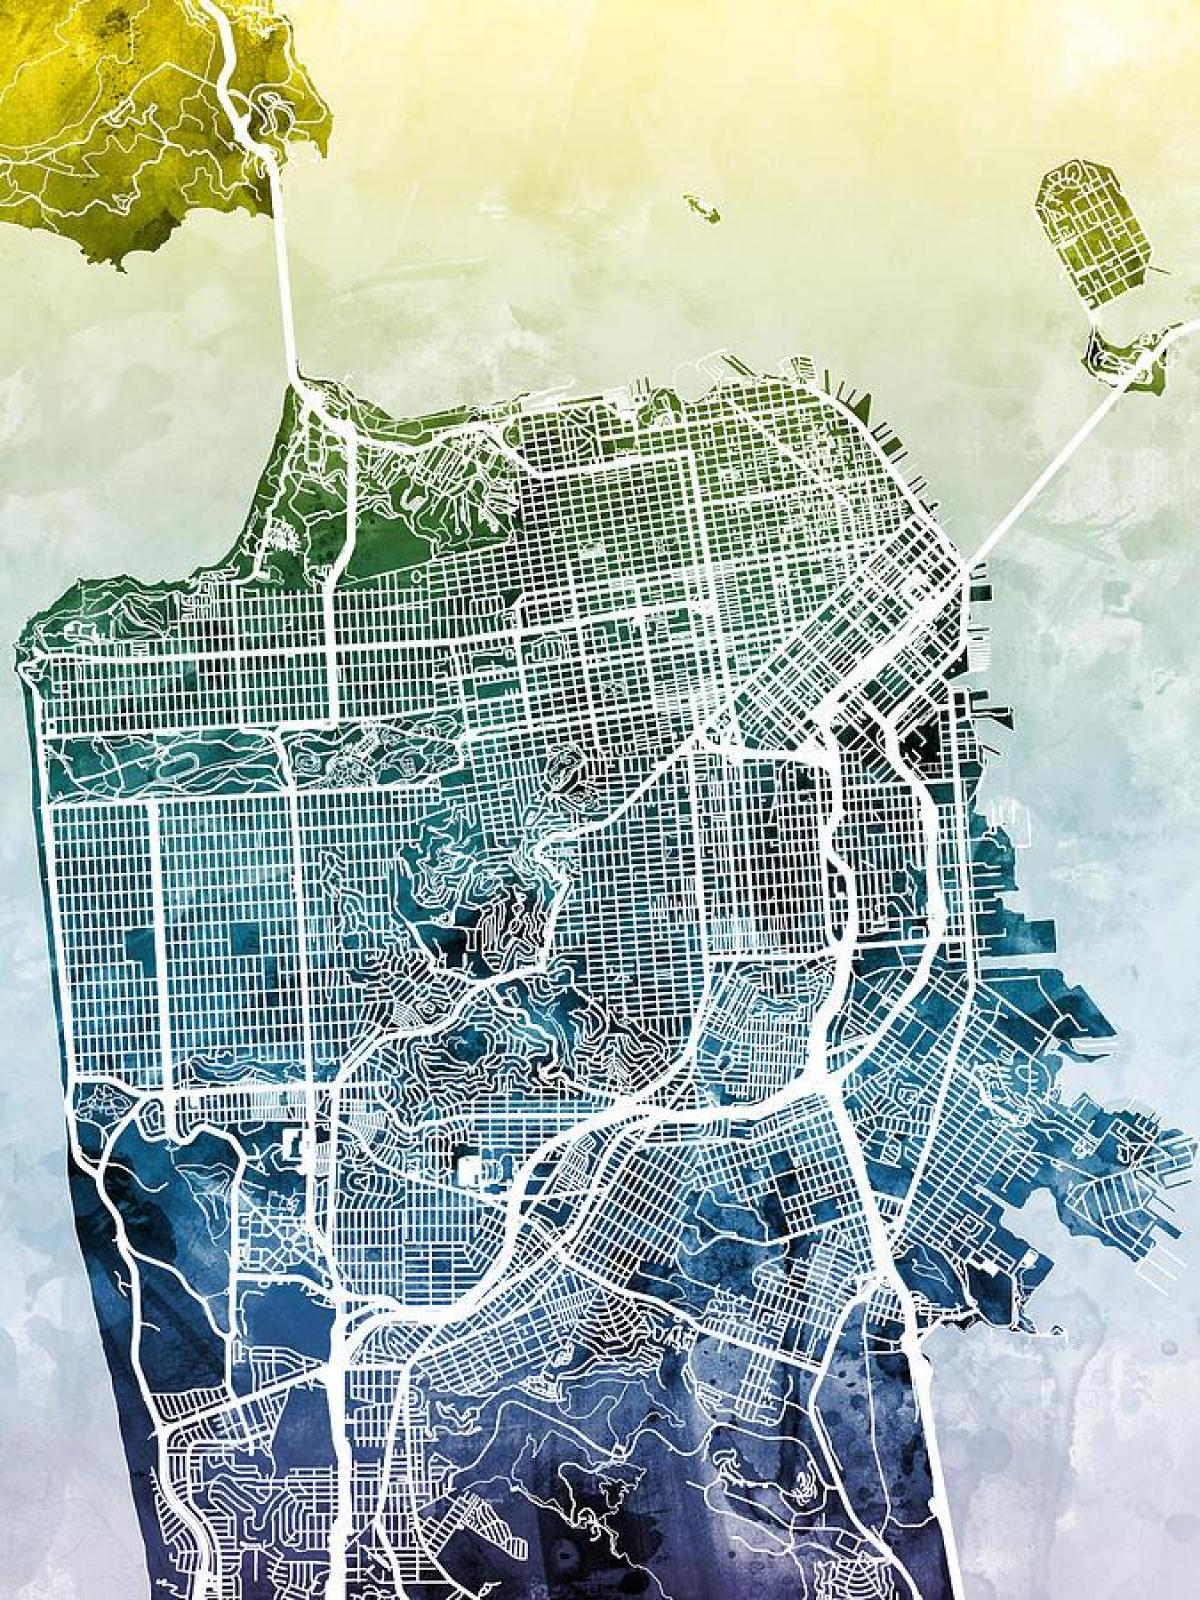 نقشہ سان فرانسسکو کے شہر آرٹ